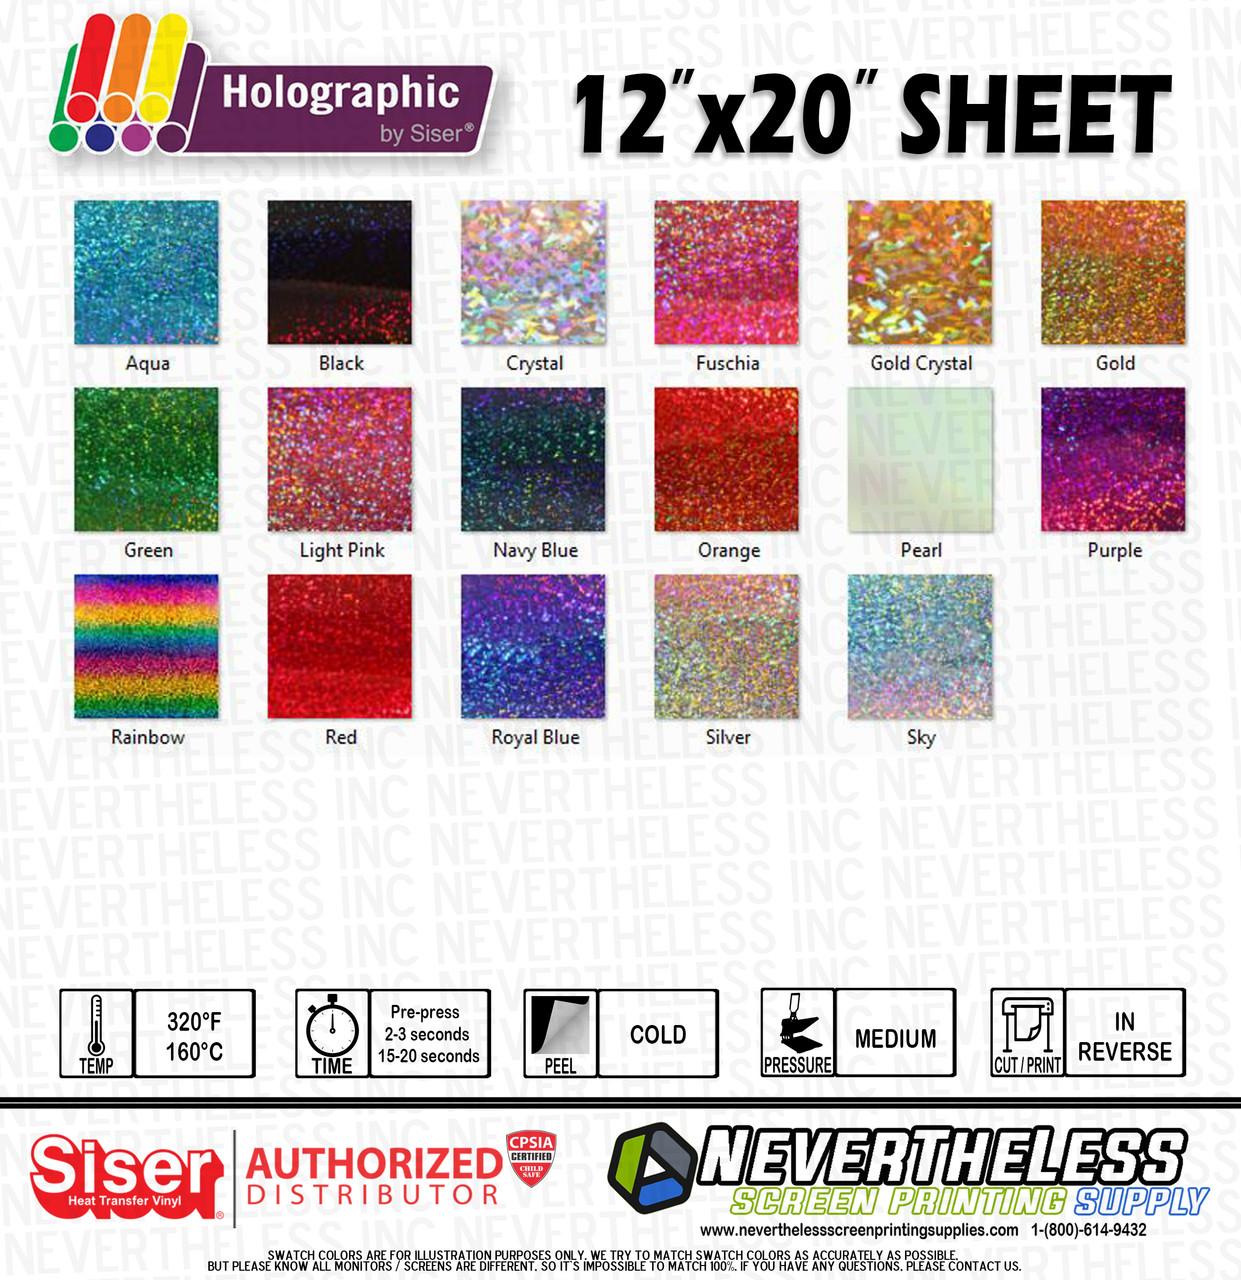 Shop SISER HTV - Heat Transfer Vinyl Color Chart Siser . Today you